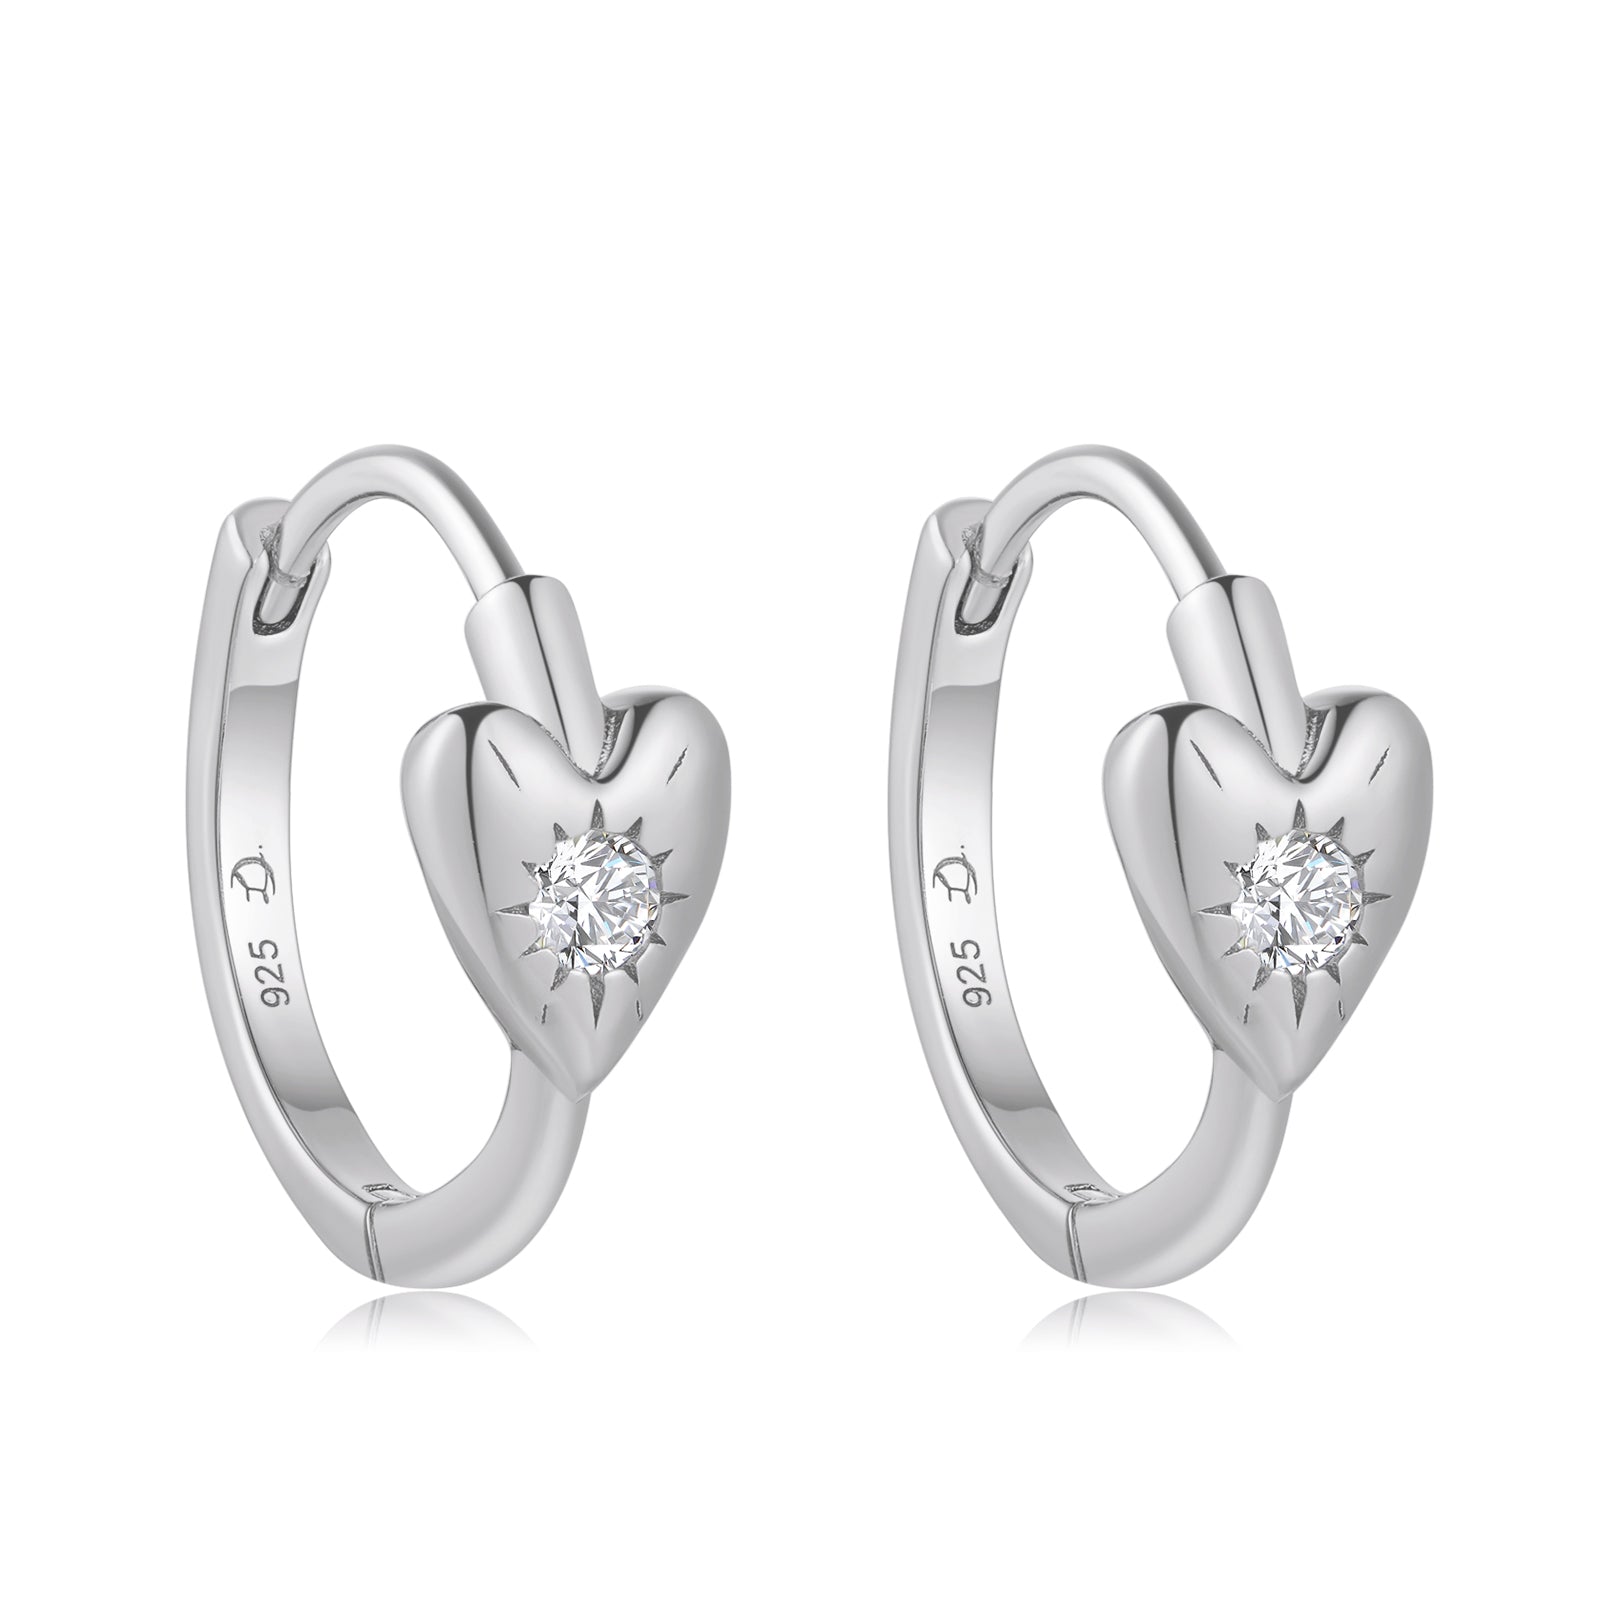 CZ Silver Heart Huggie Earrings - Self Love | LOVE BY THE MOON